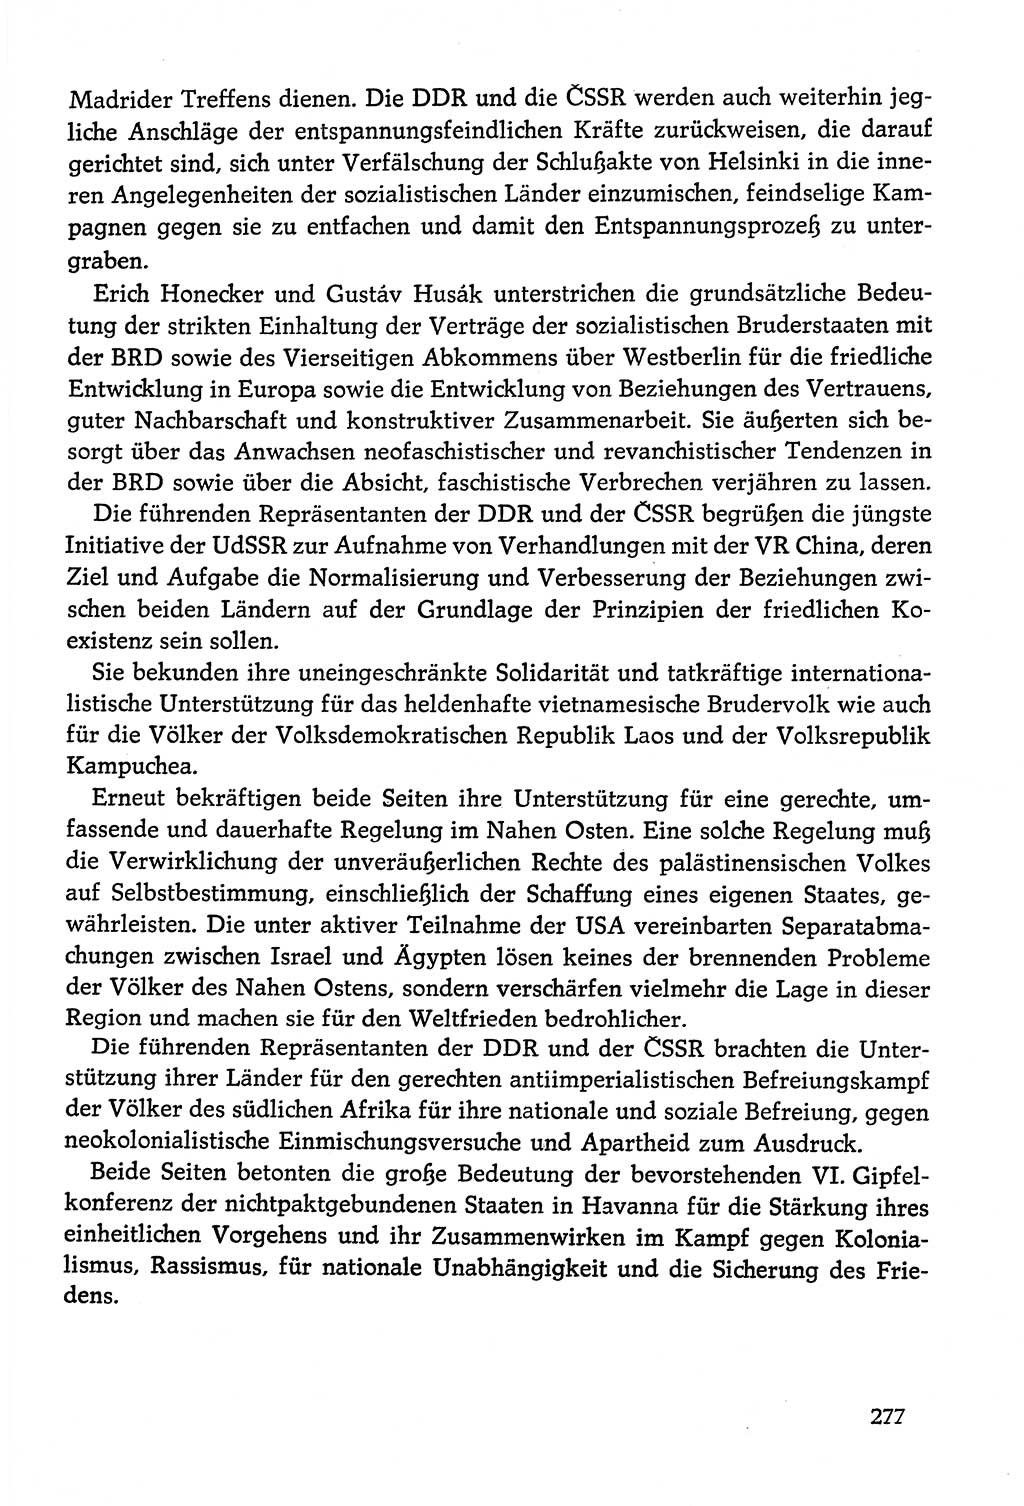 Dokumente der Sozialistischen Einheitspartei Deutschlands (SED) [Deutsche Demokratische Republik (DDR)] 1978-1979, Seite 277 (Dok. SED DDR 1978-1979, S. 277)